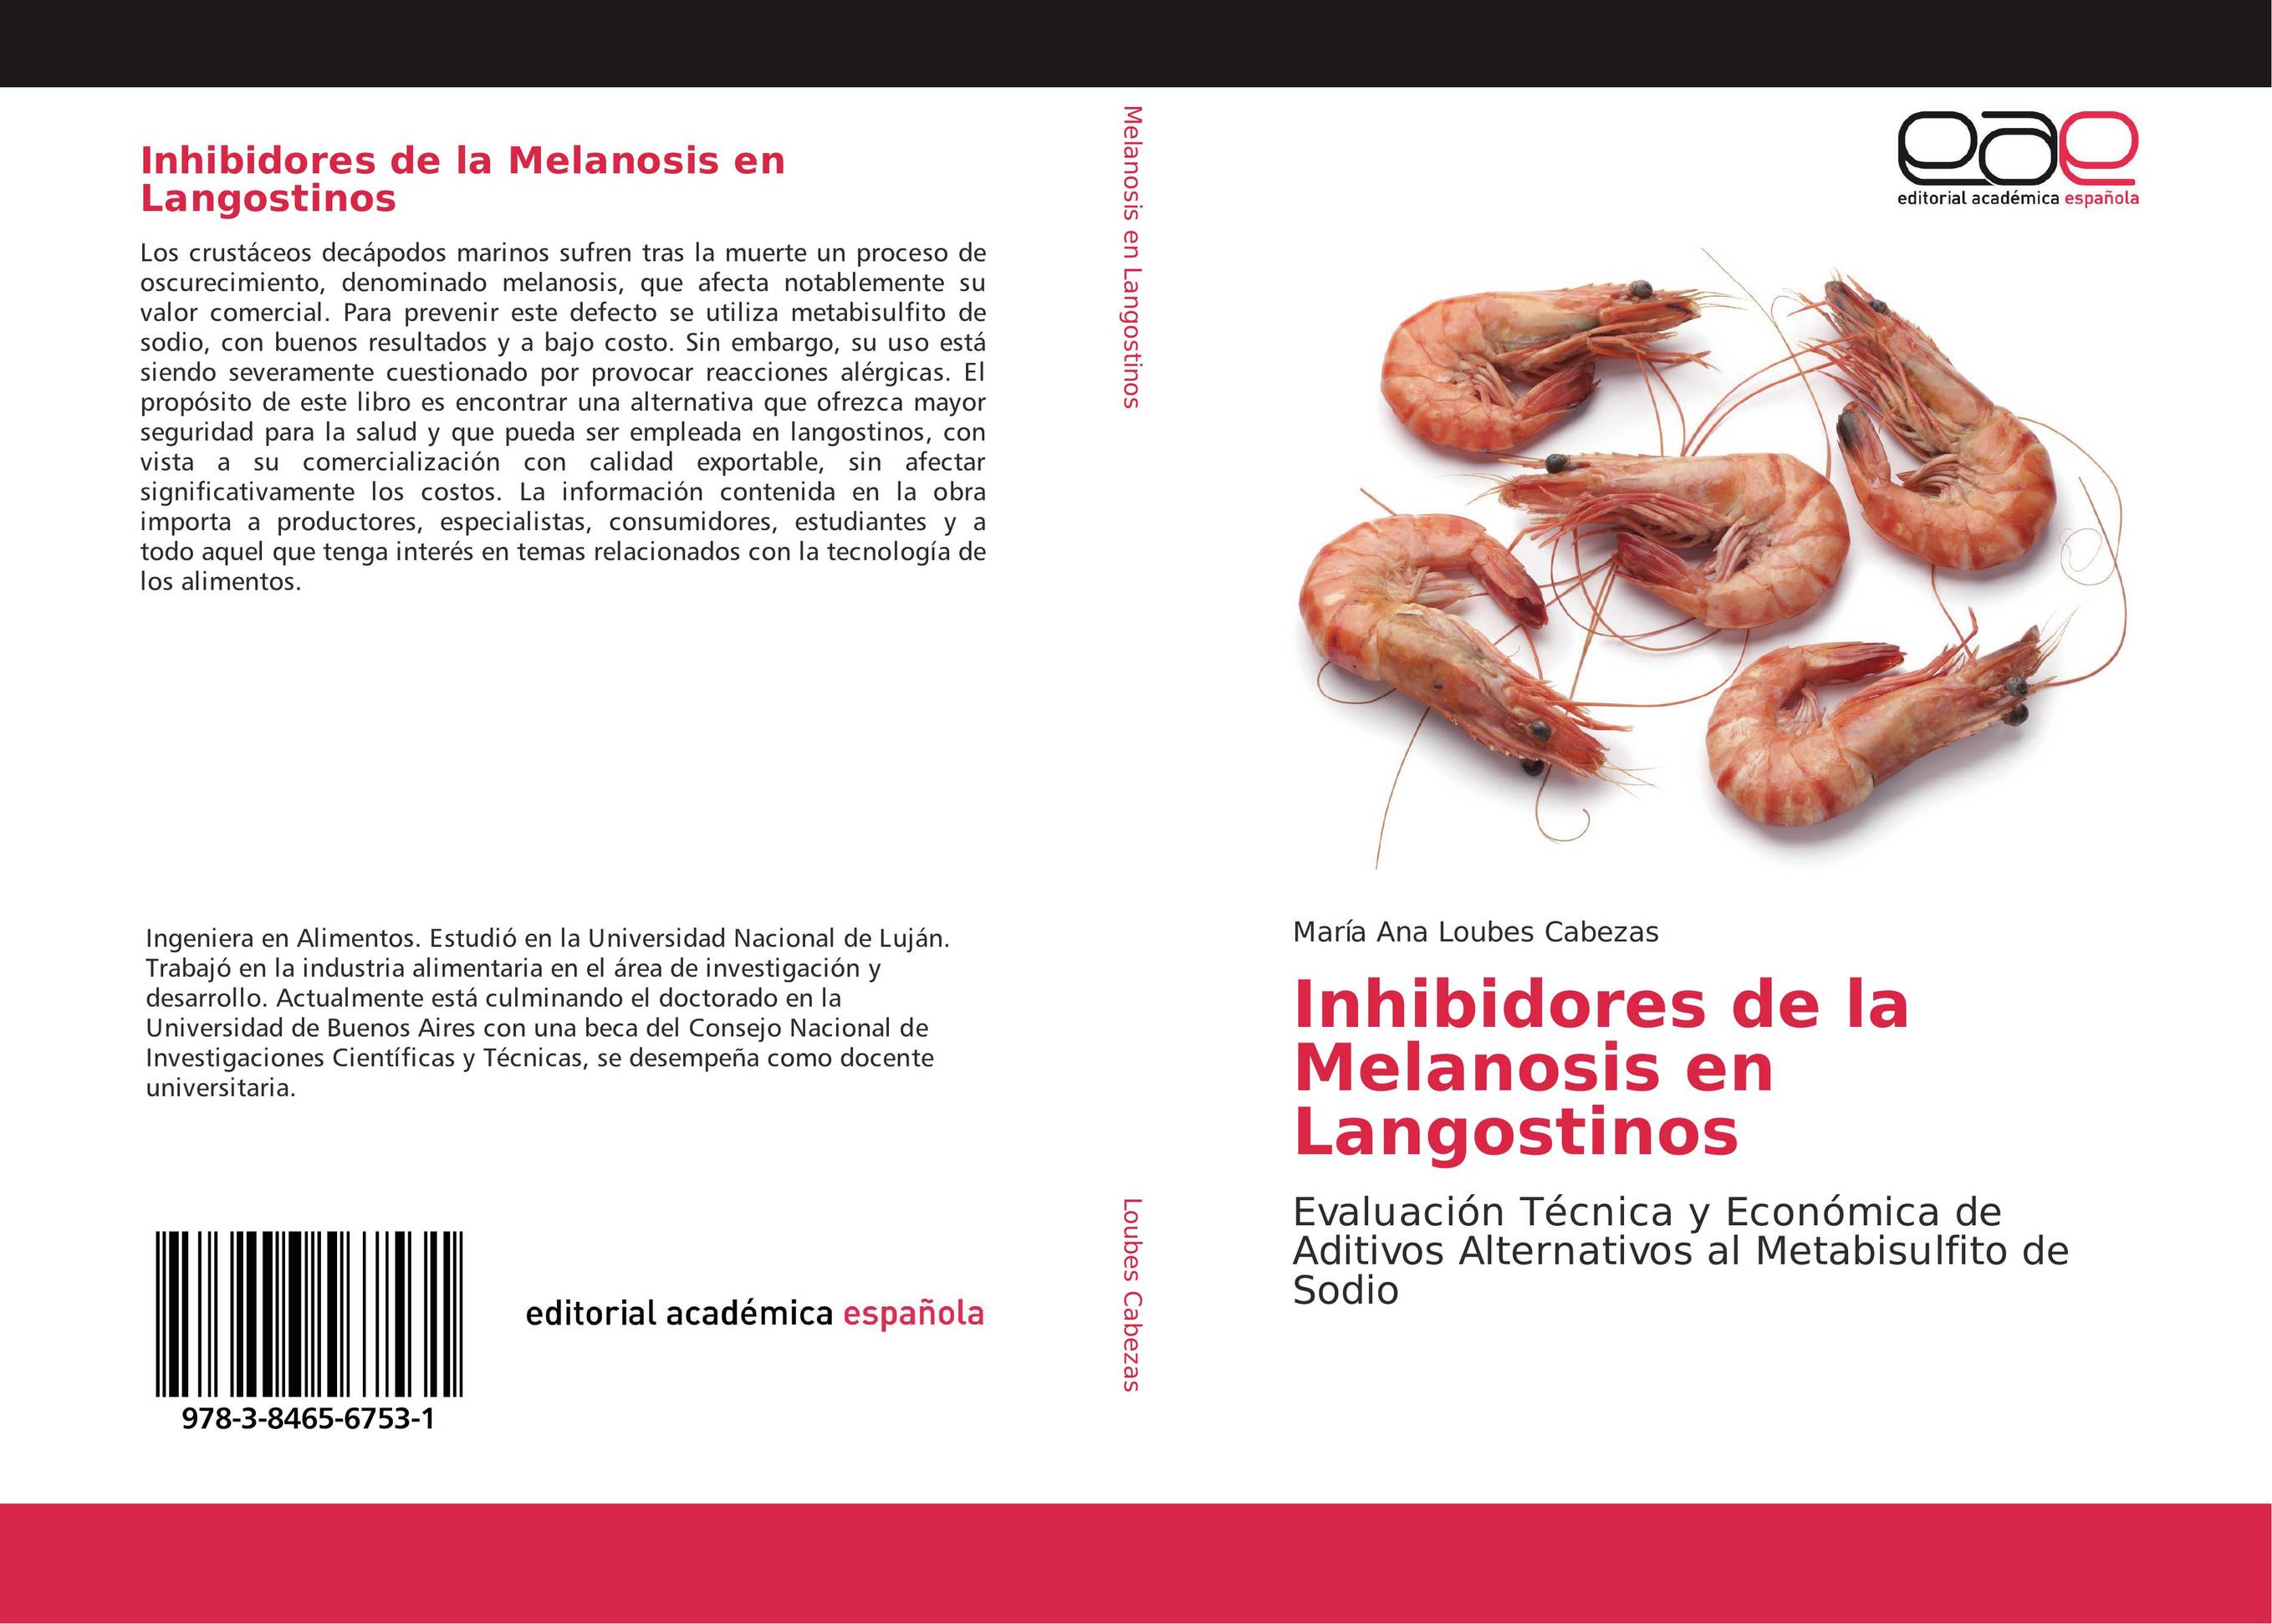 Inhibidores de la Melanosis en Langostinos